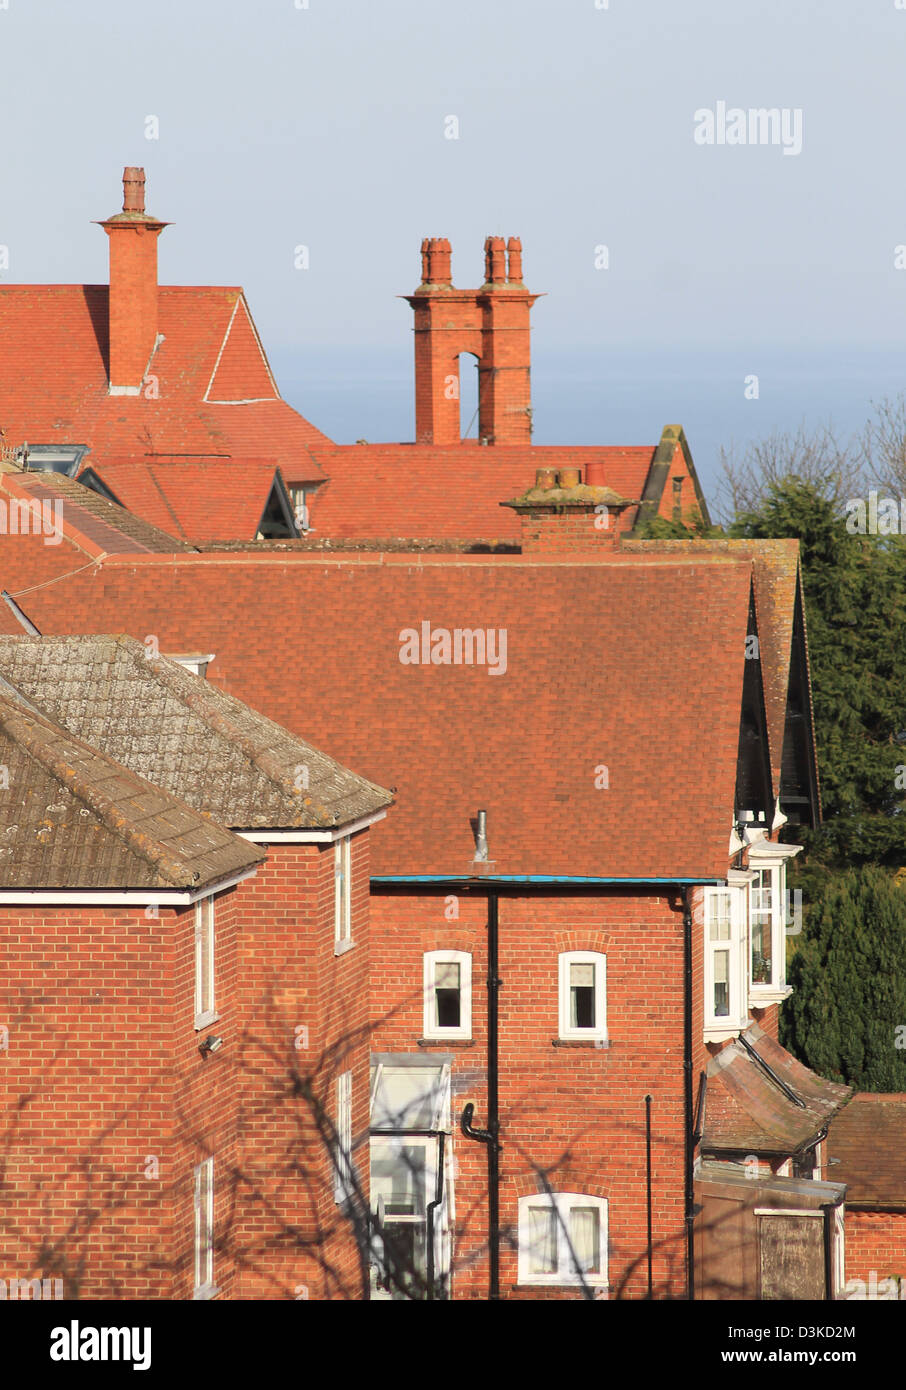 Di tegole rosse e sui tetti della casa, Scarborough, in Inghilterra. Foto Stock